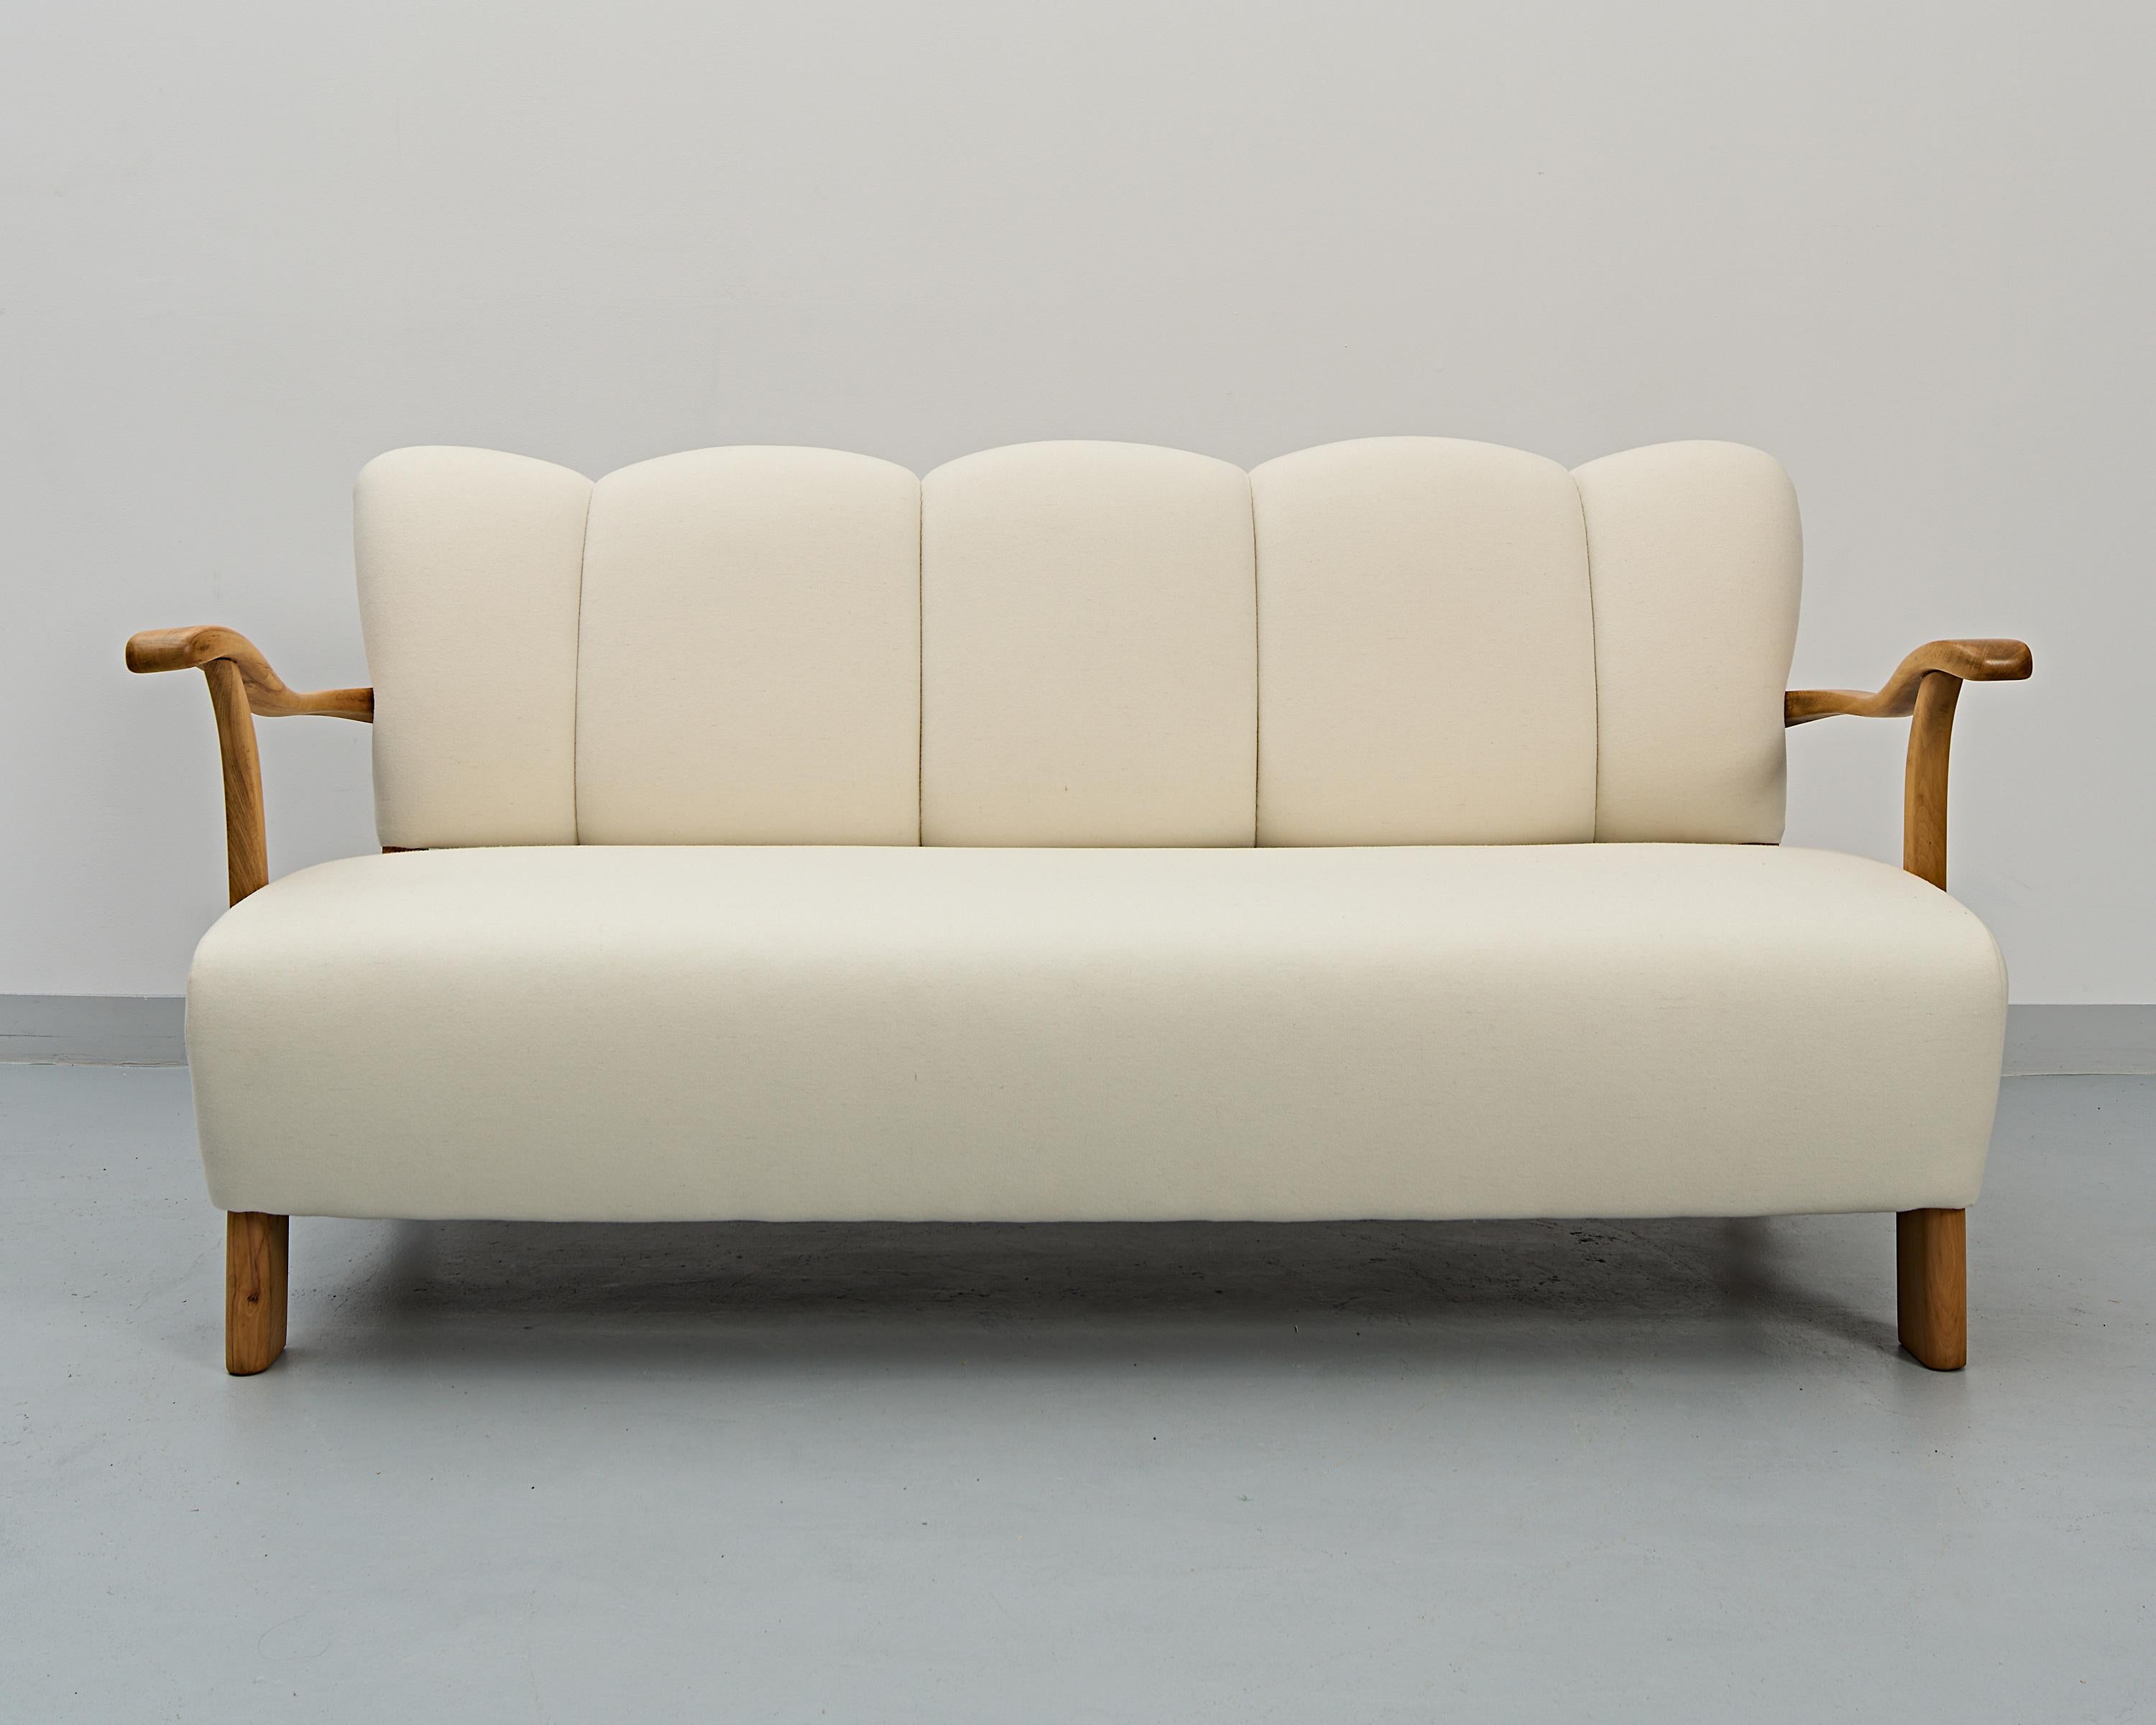 Eine Art-Deco-Garnitur aus einem Sofa und zwei Sesseln des weltbekannten ehemaligen tschechoslowakischen Designers Jindrich Halabala. 
Unglaubliche Restaurierungsarbeiten. 
Ein auffallend schönes Set von Vintage-Möbeln und eine beeindruckende